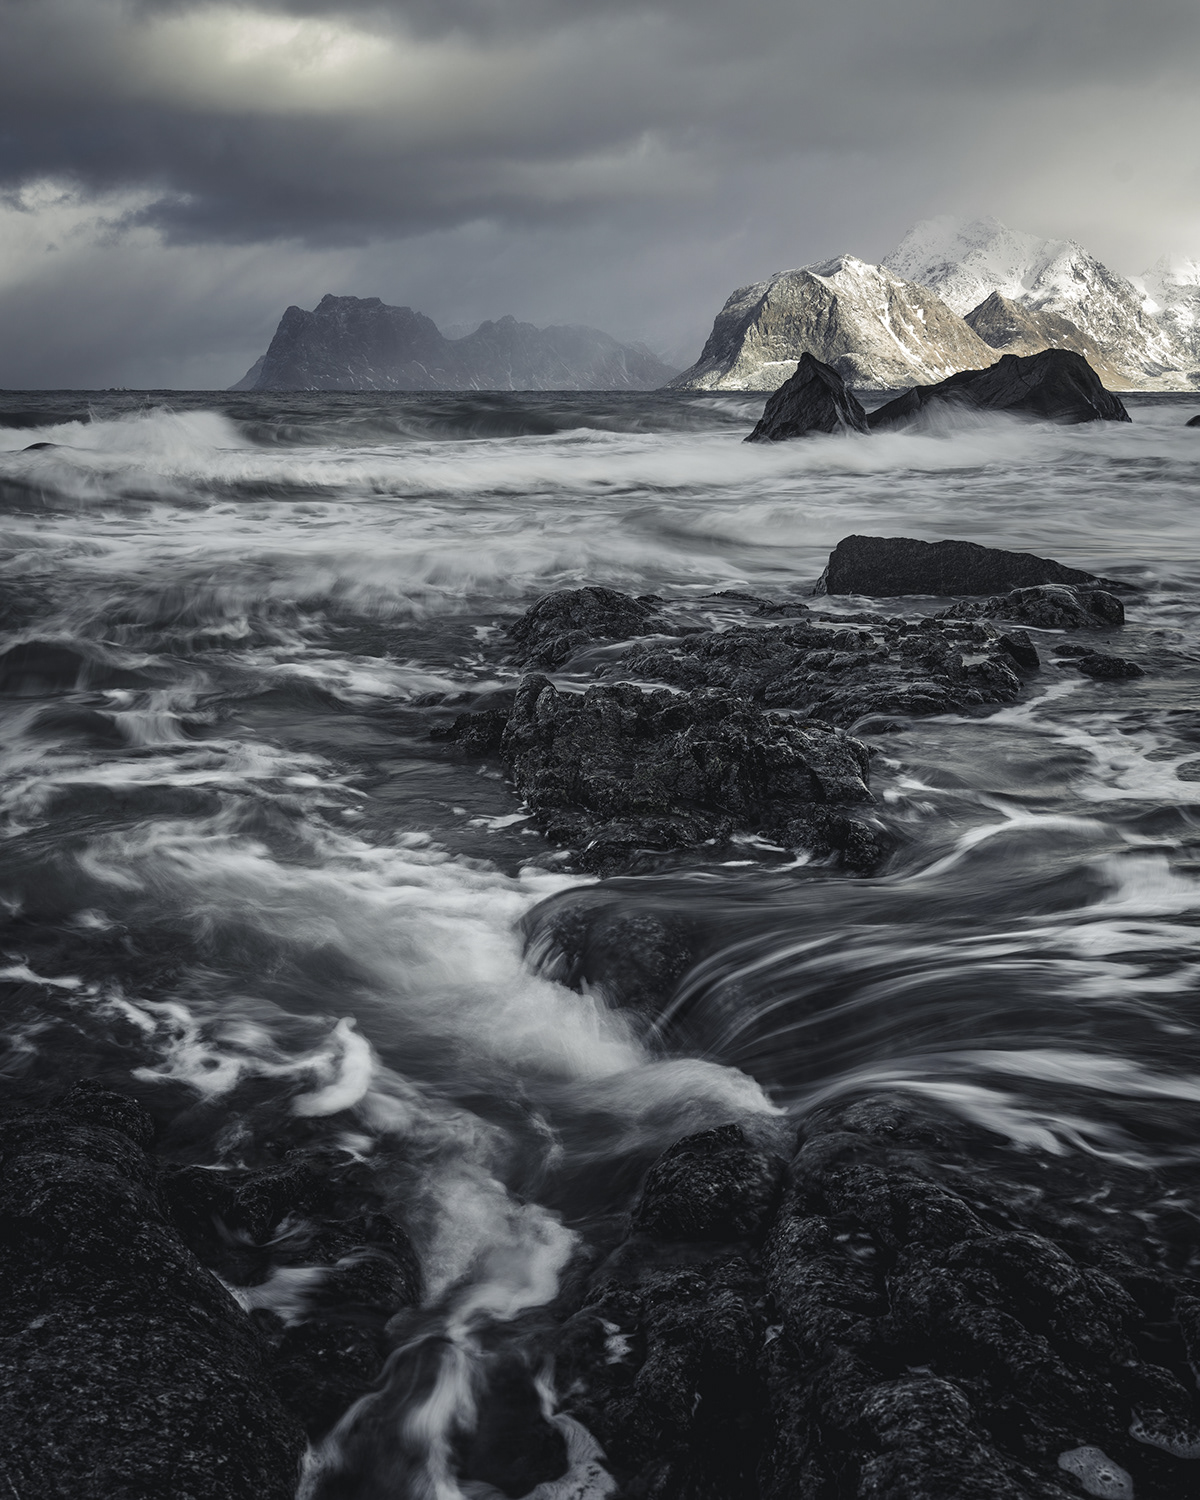 lofoten norway Arctic islands winter storm waves wind Ocean